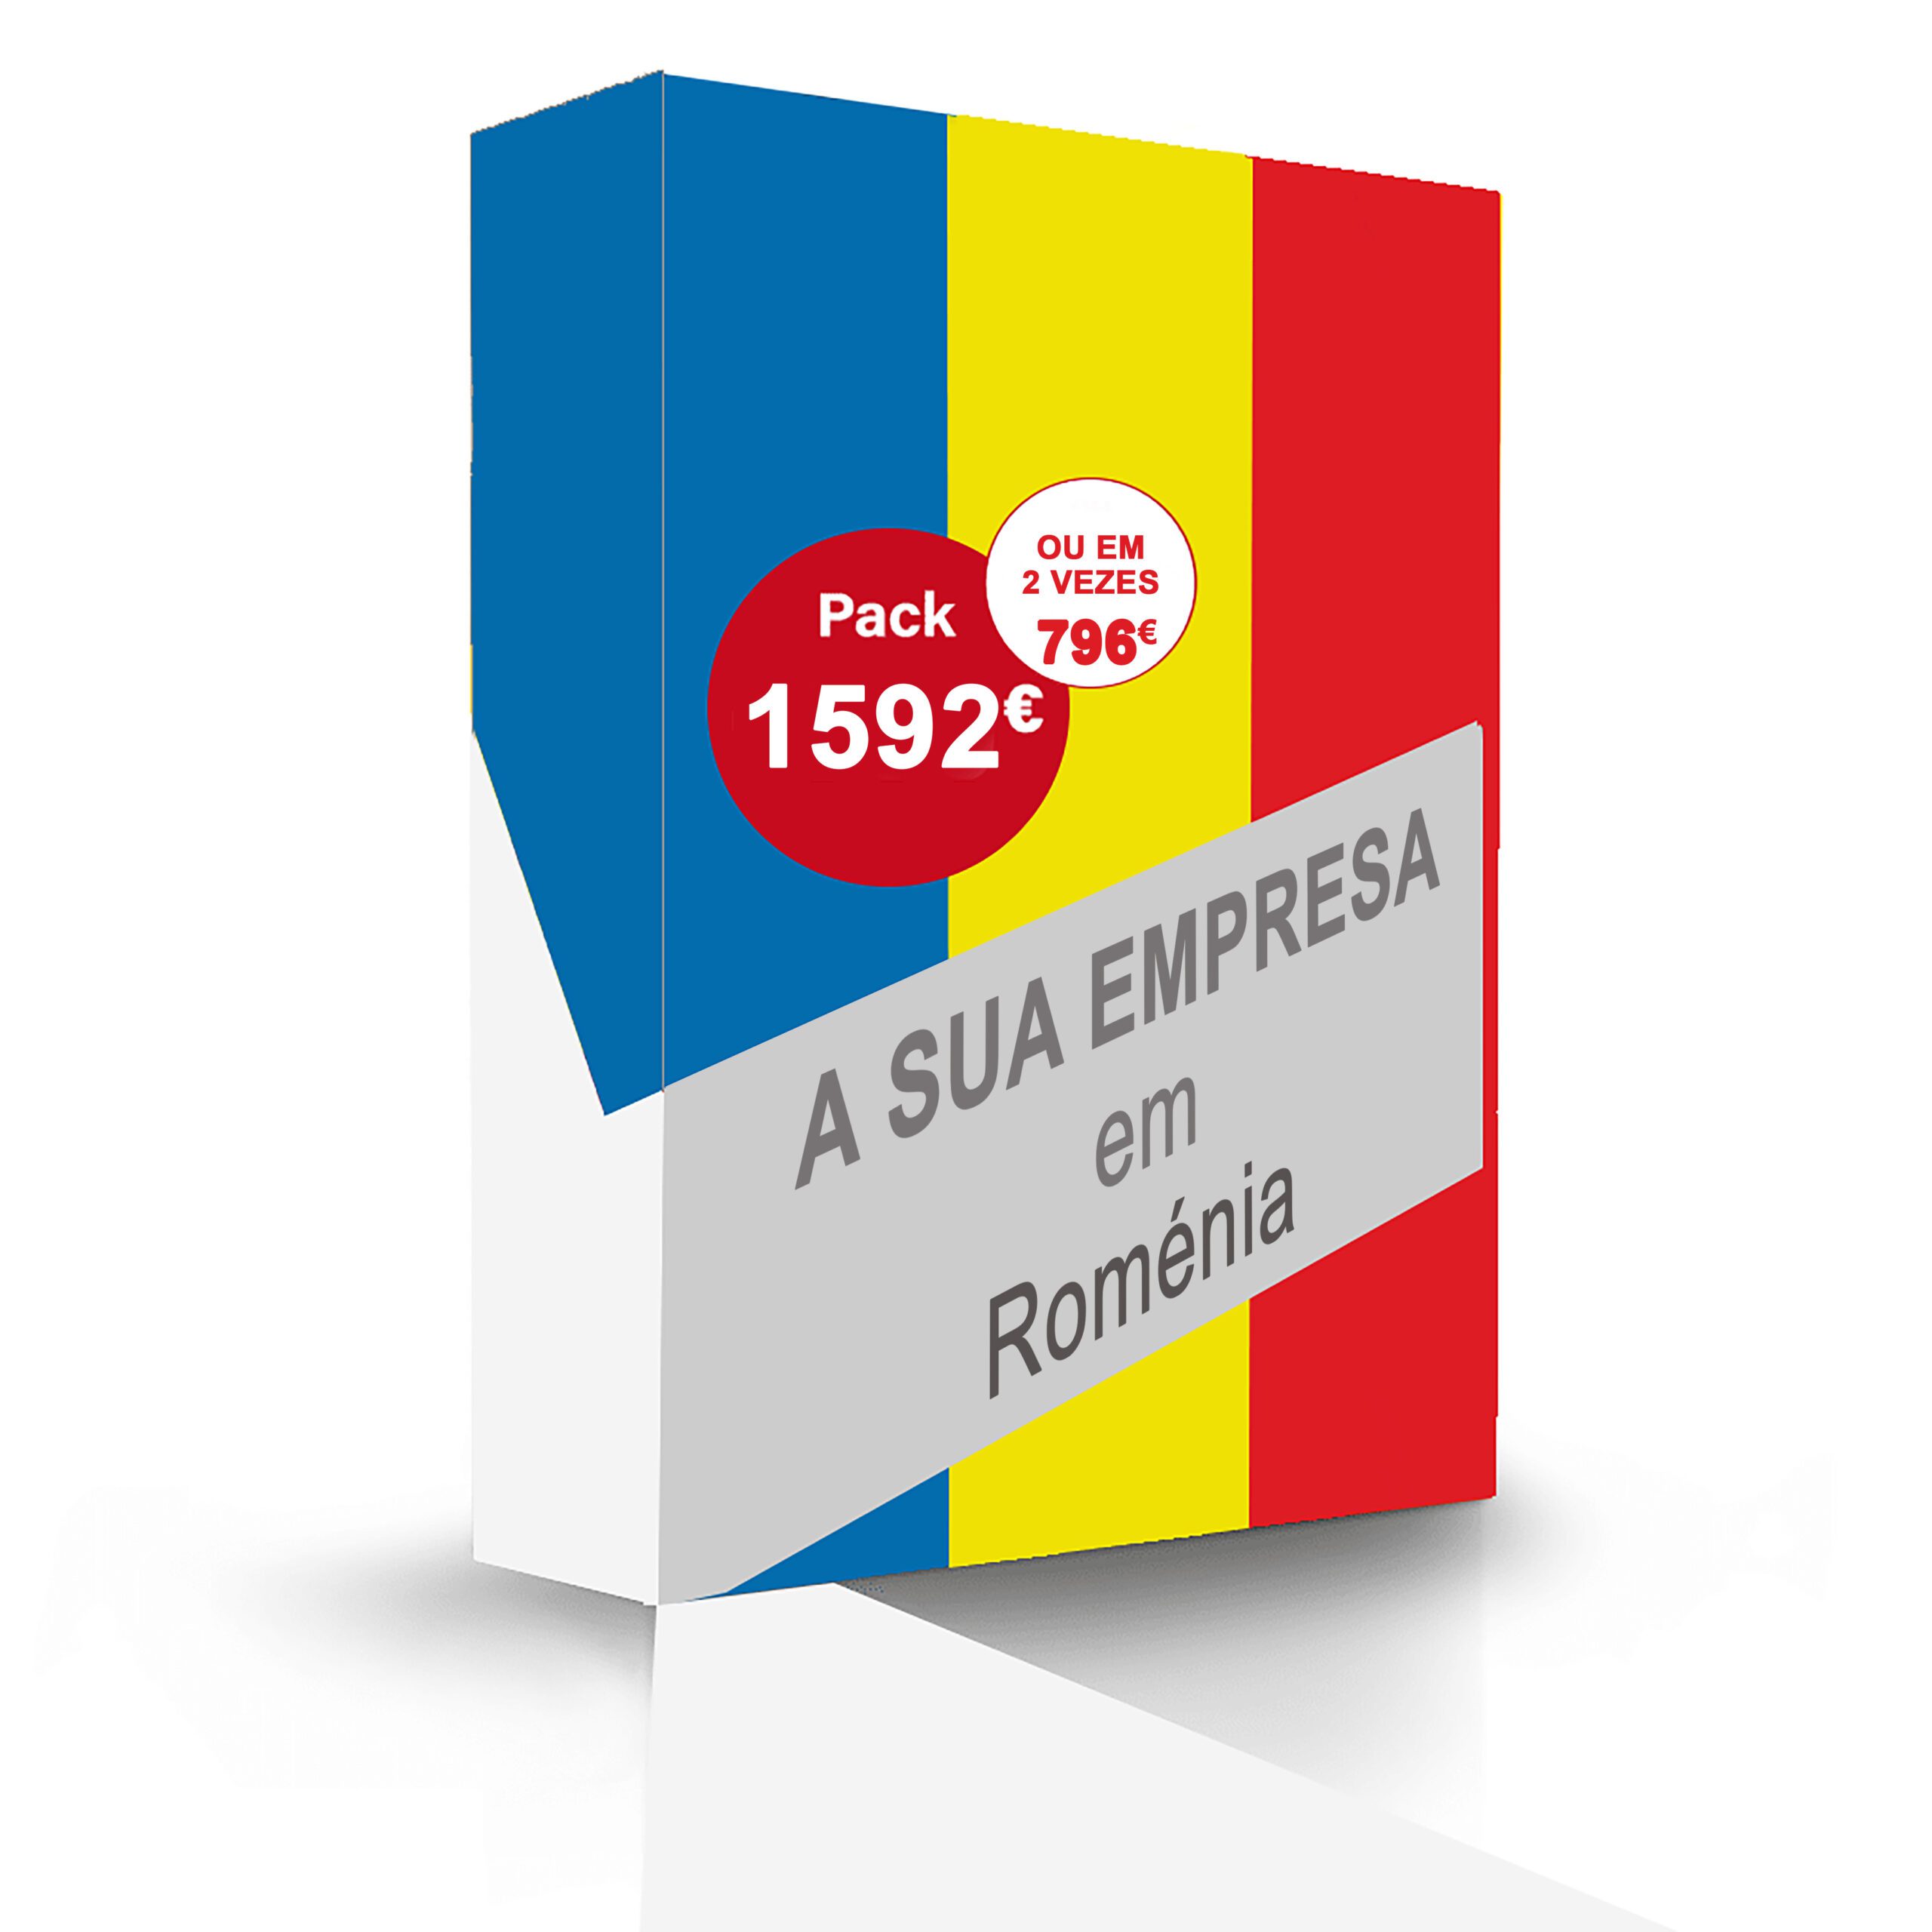 Criação de empresa na Roménia, sem viajar, introdução* bancária* incluída